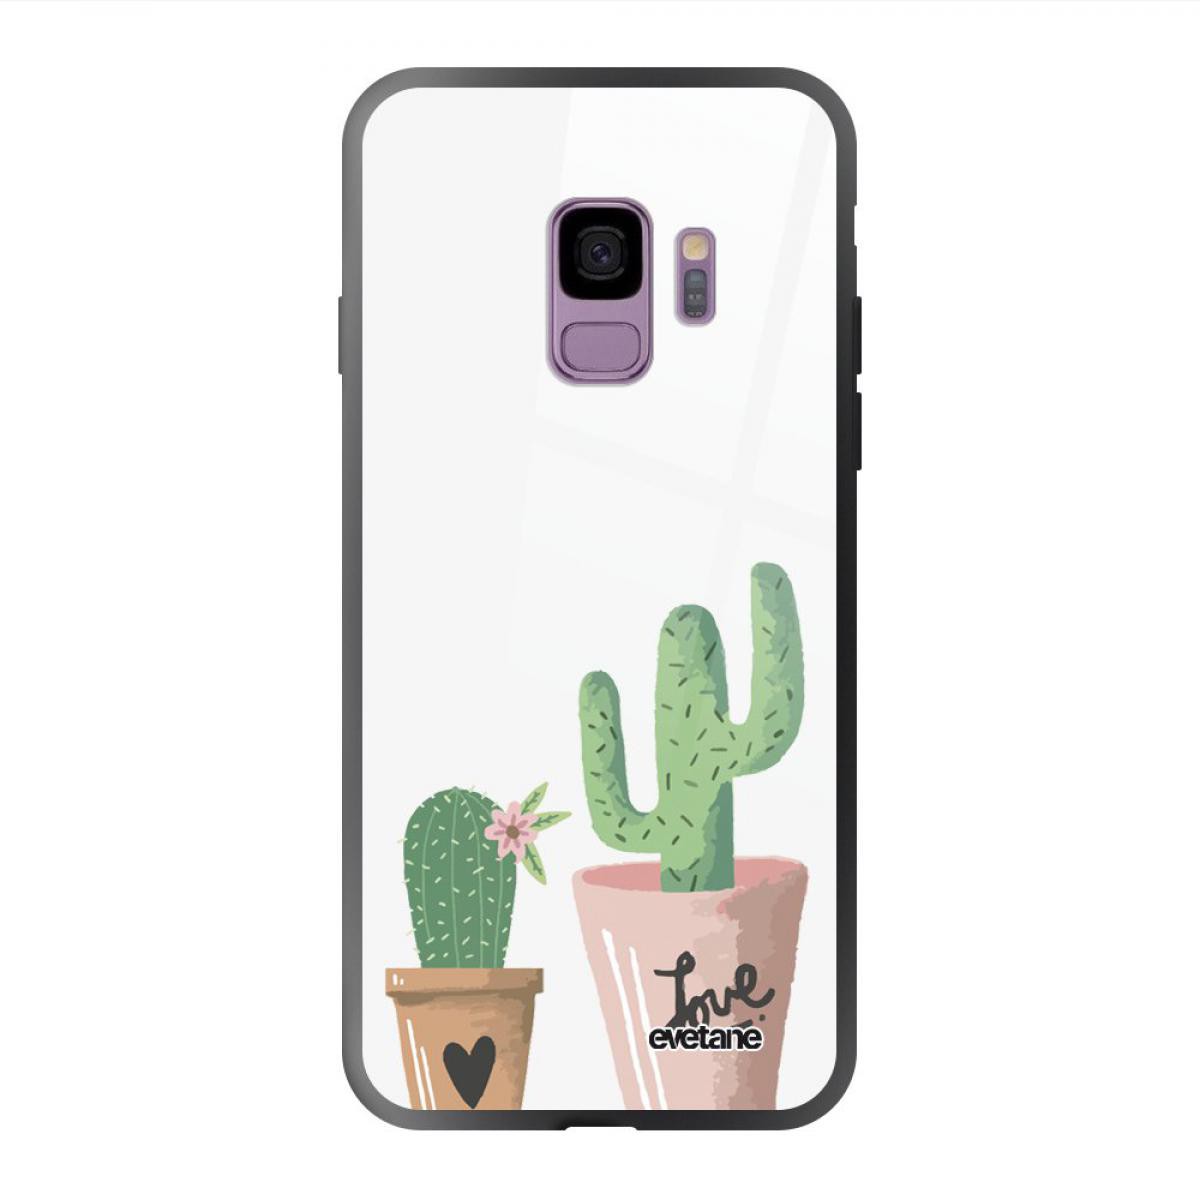 Evetane - Coque Galaxy S9 soft touch noir effet glossy Cactus Love Design Evetane - Coque, étui smartphone